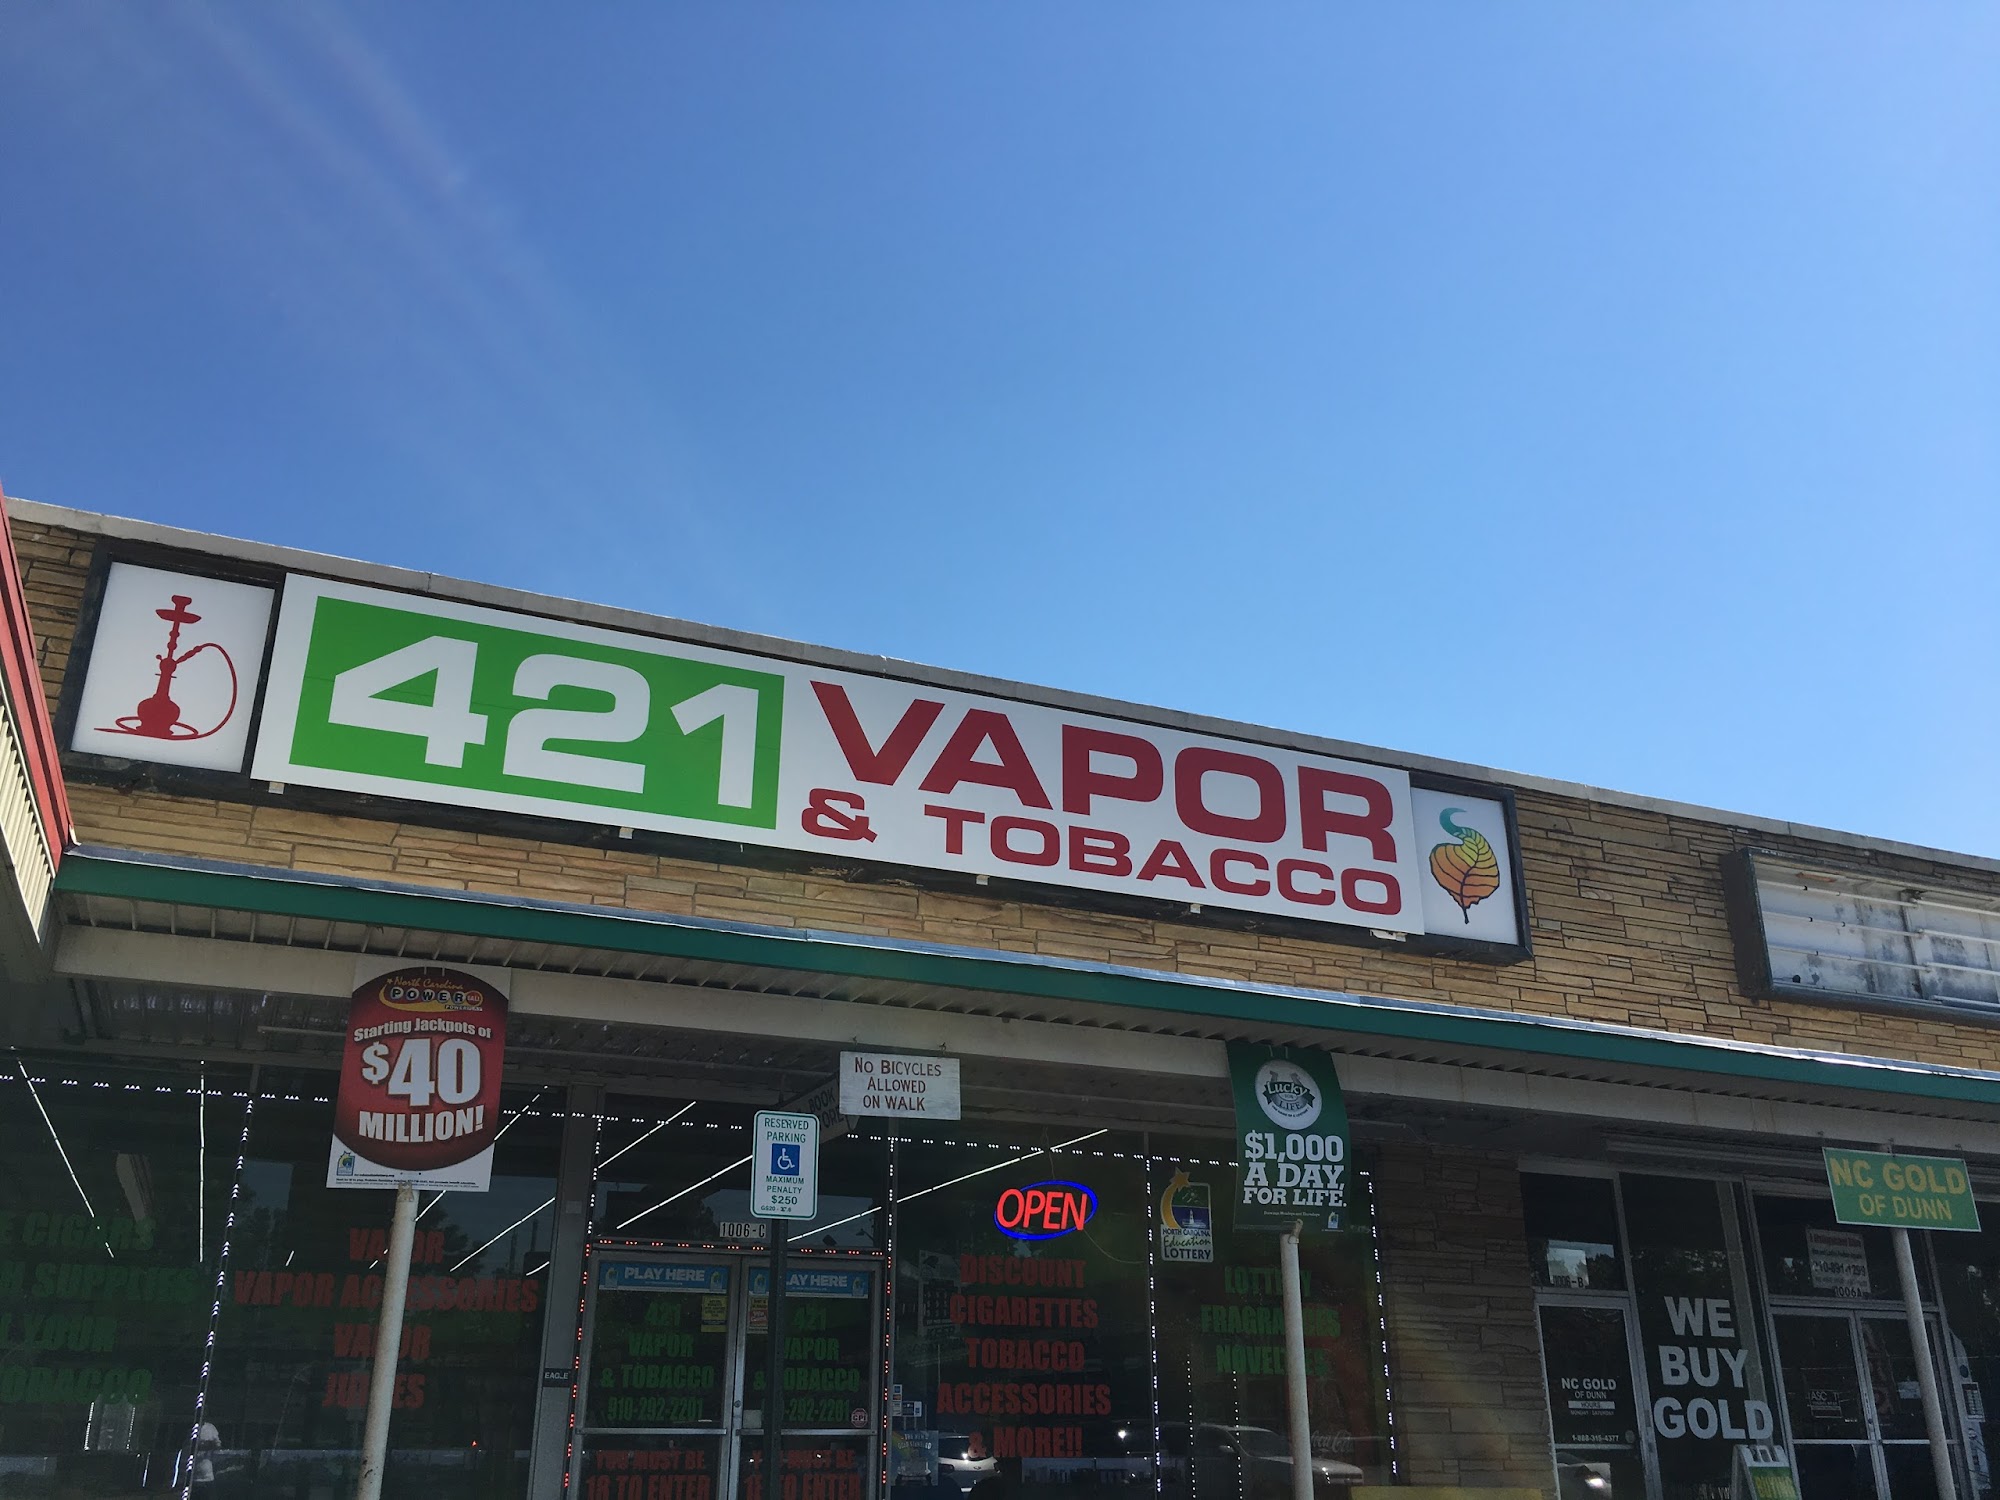 421 Vapor & Tobacco